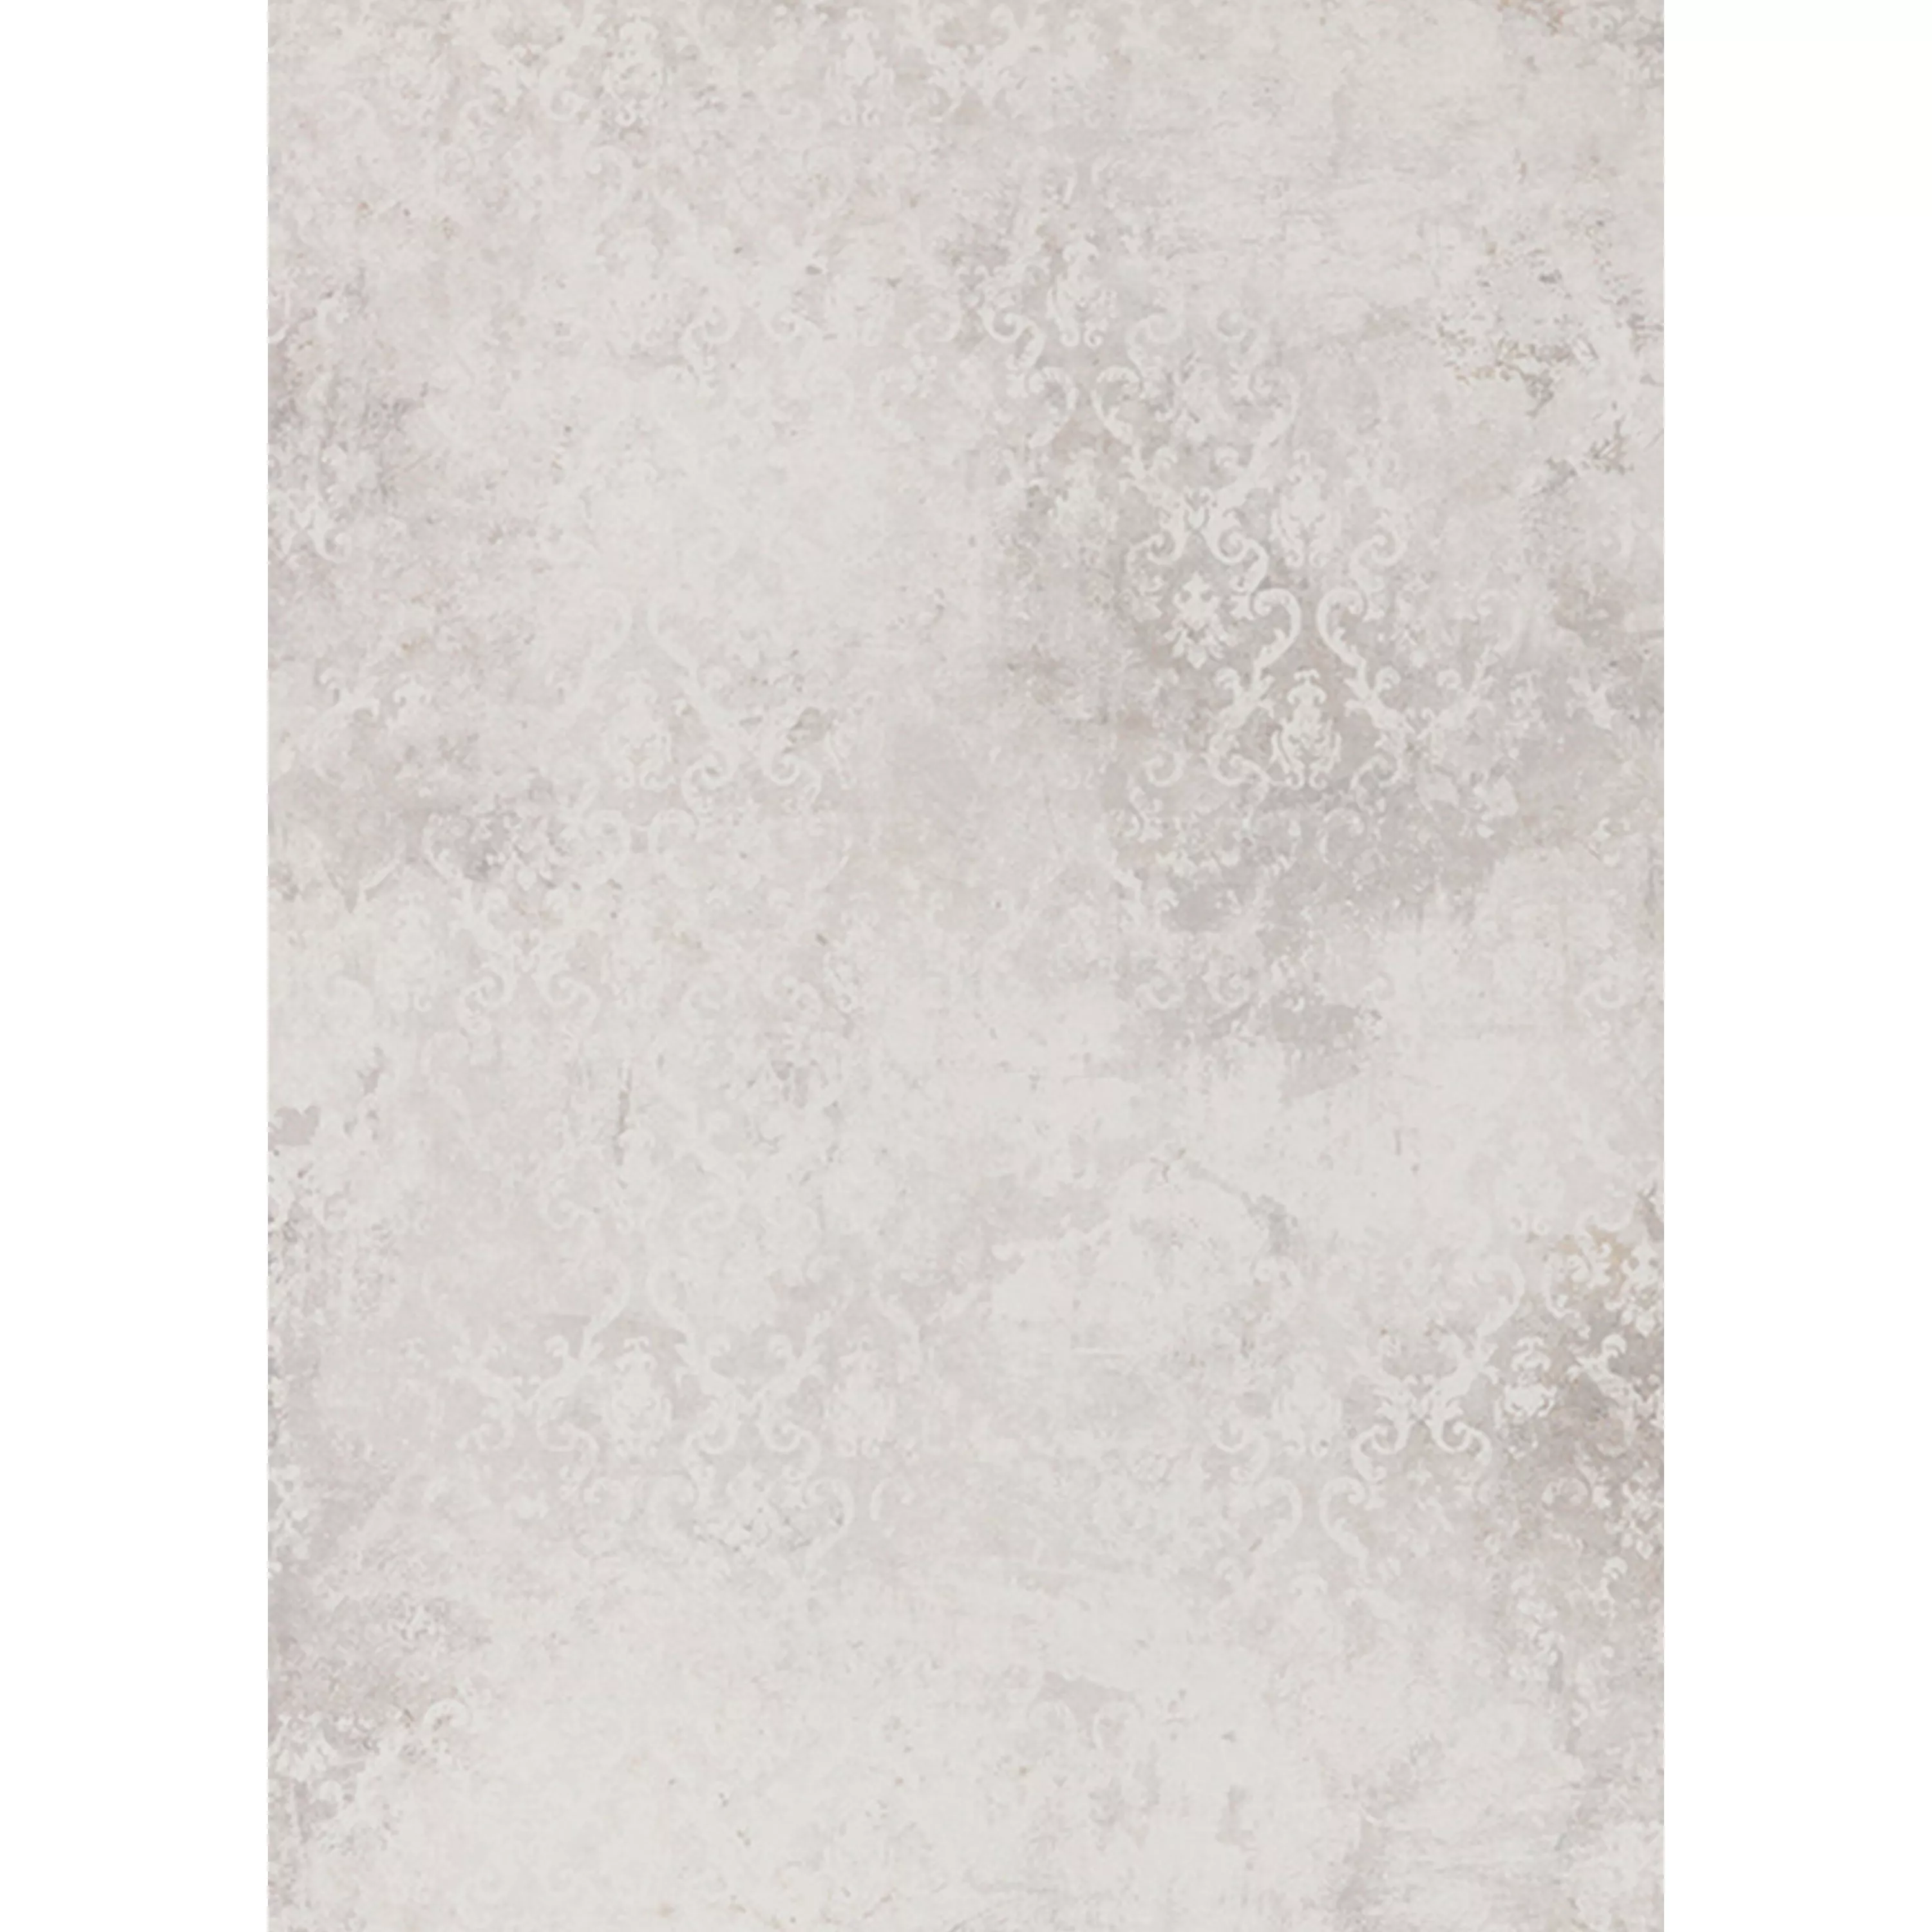 Ladrilhos Poetic Olhar de Pedra R10/A Branco Decor 60x120cm